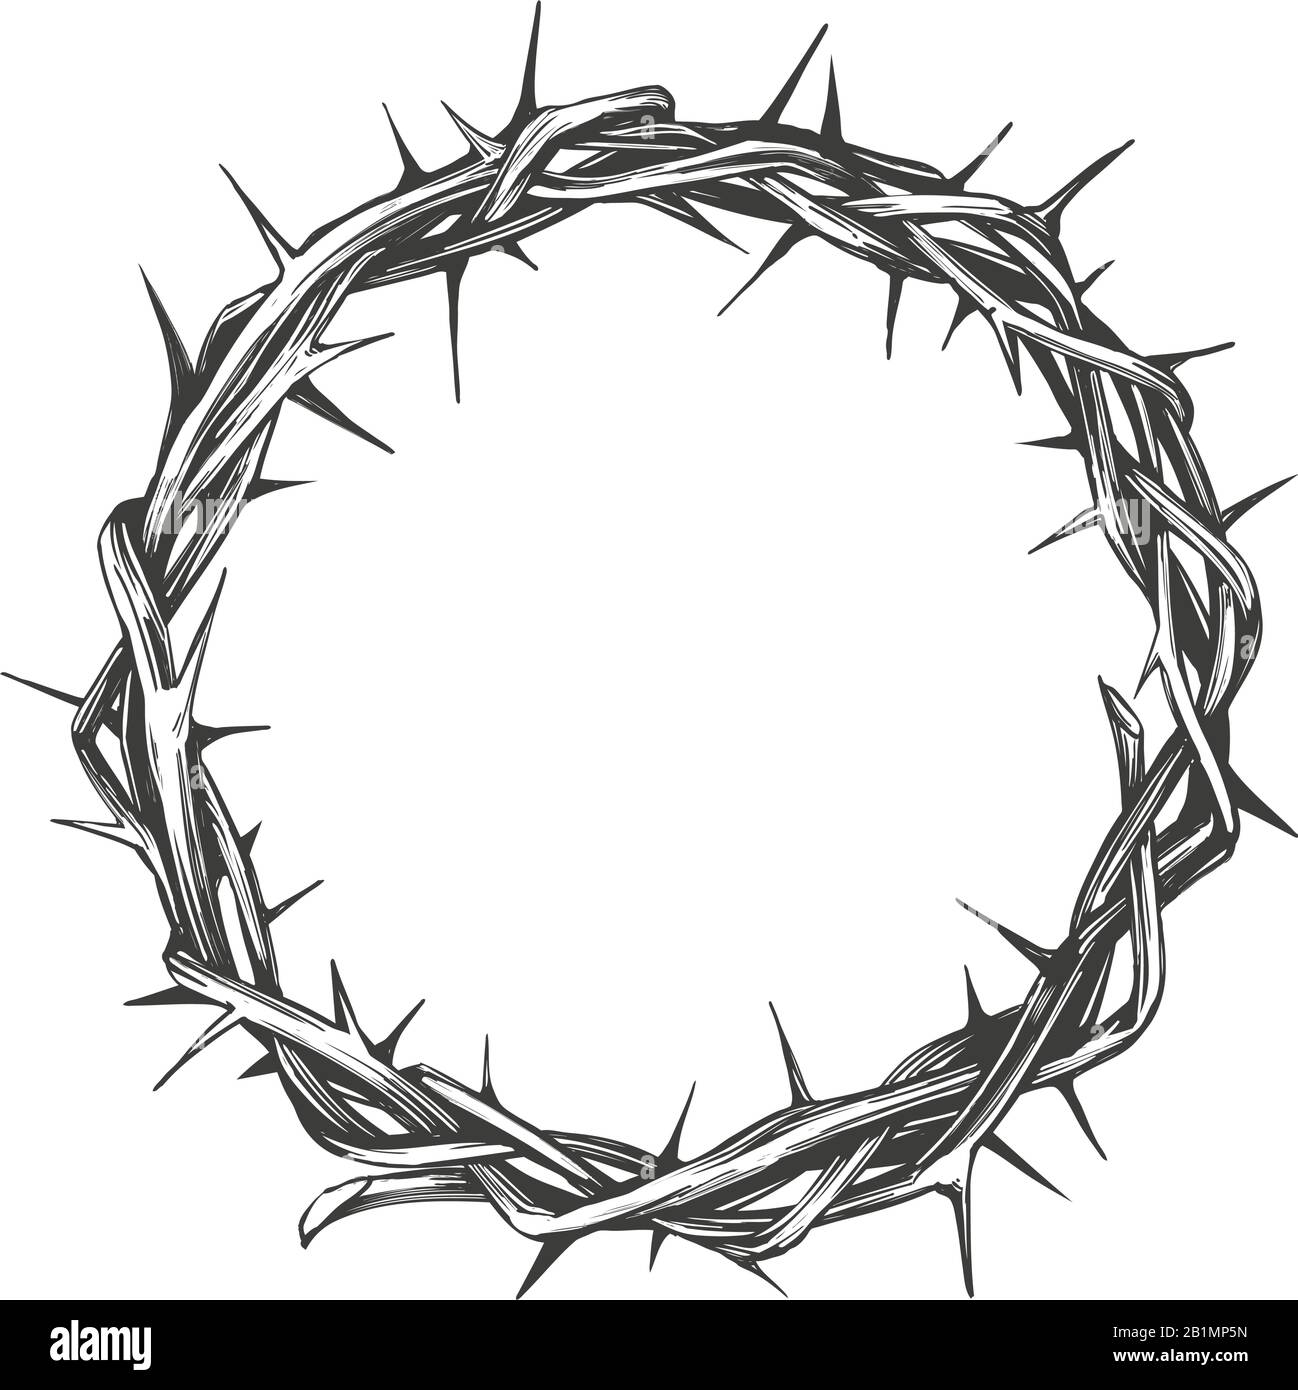 Corona di spine, simbolo religioso pasquale del cristianesimo